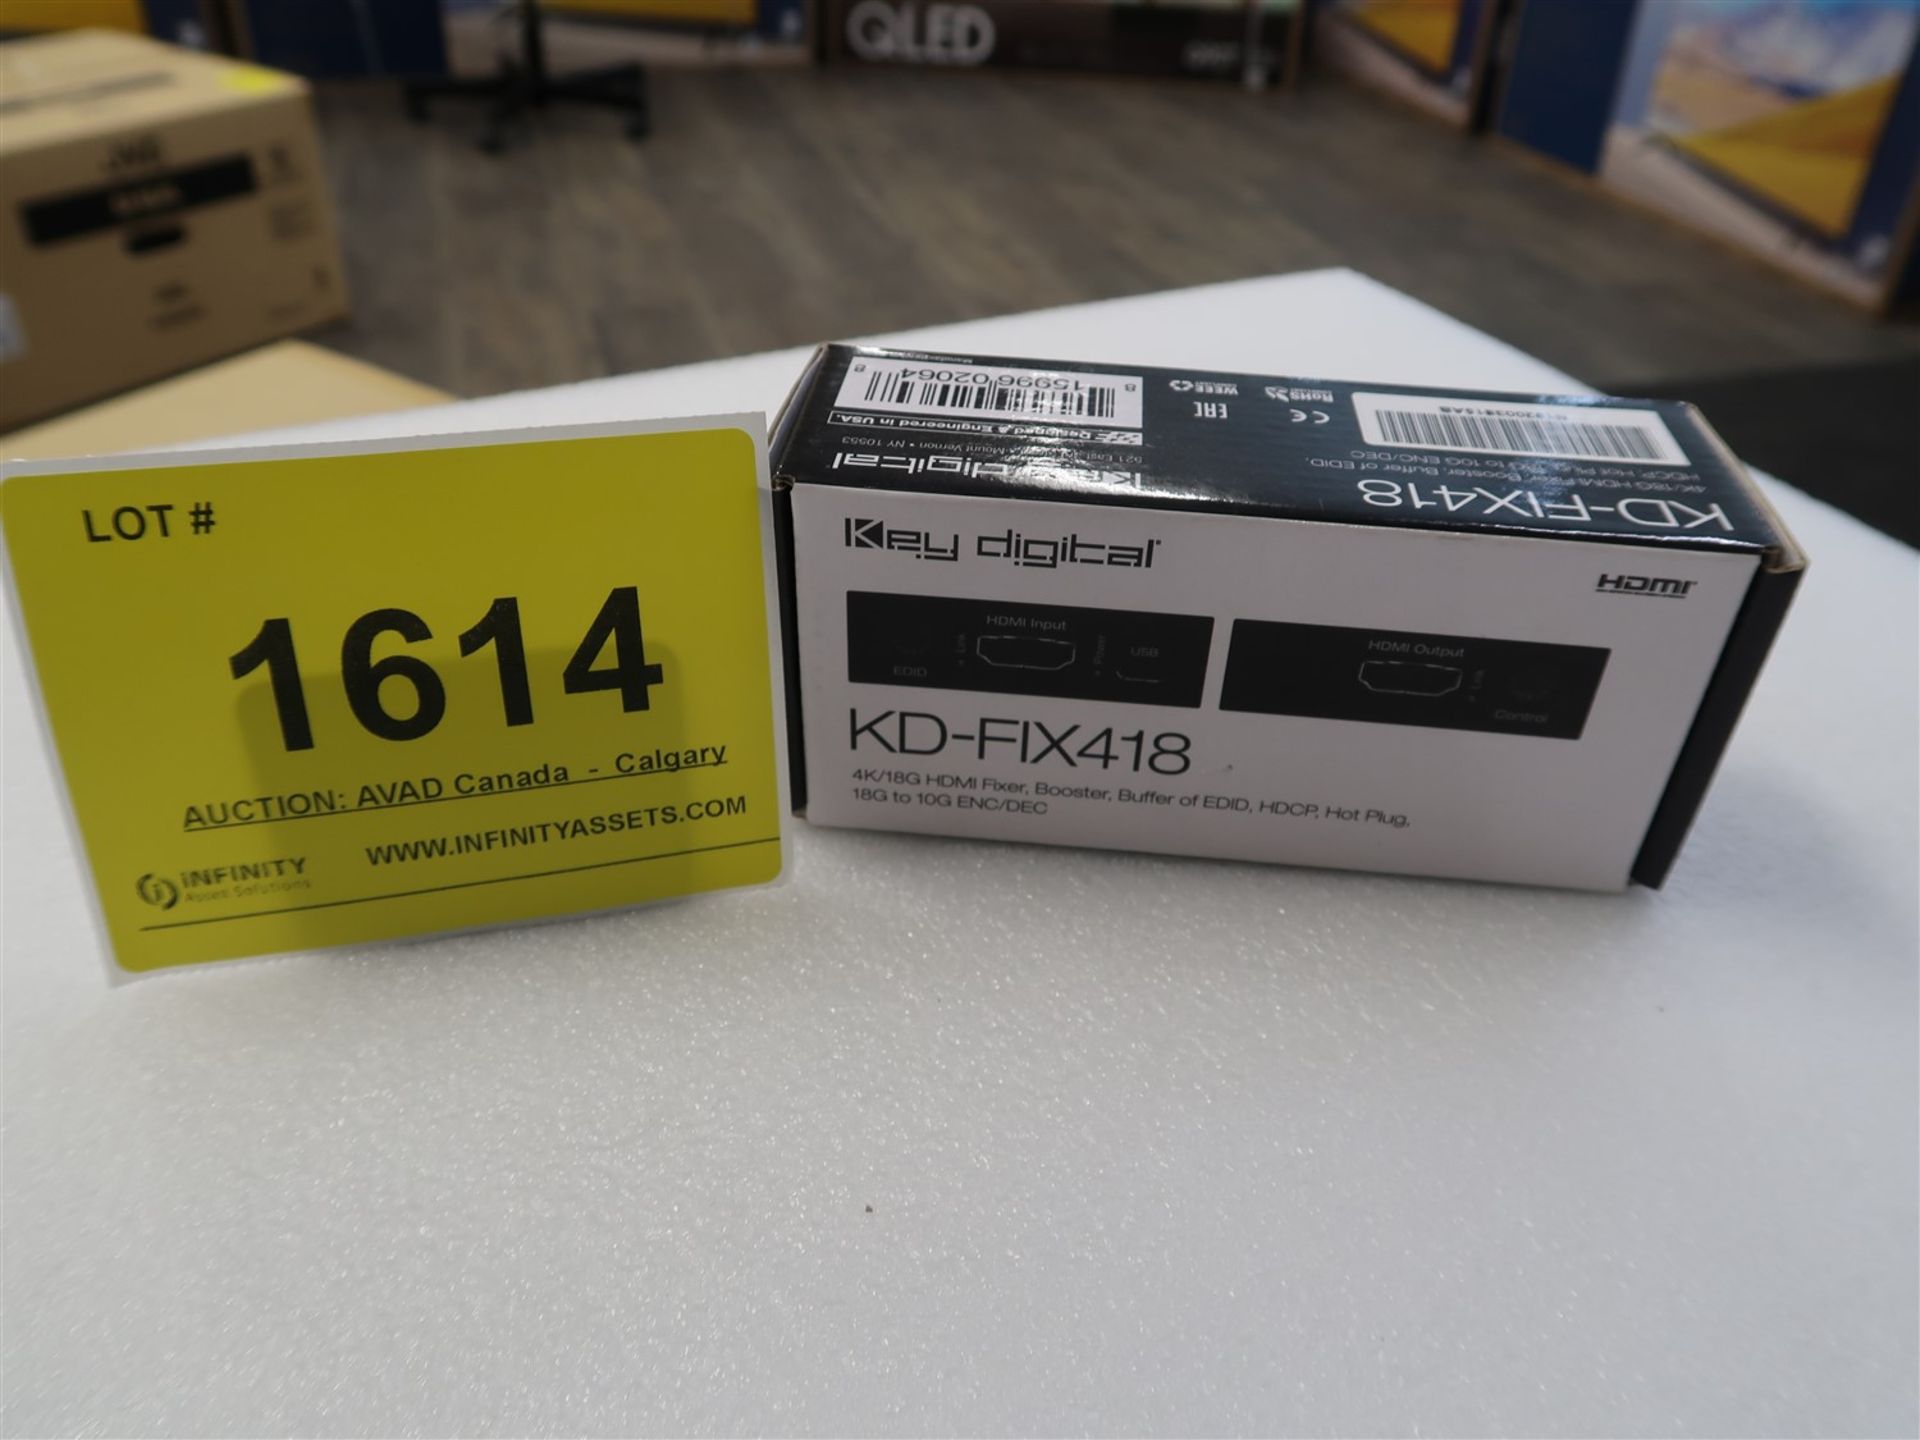 KEY DIGITAL FIX 418 4K/18G HDMI FIXER, BOOSTER, BUFFER OF EDID, (BNIB)